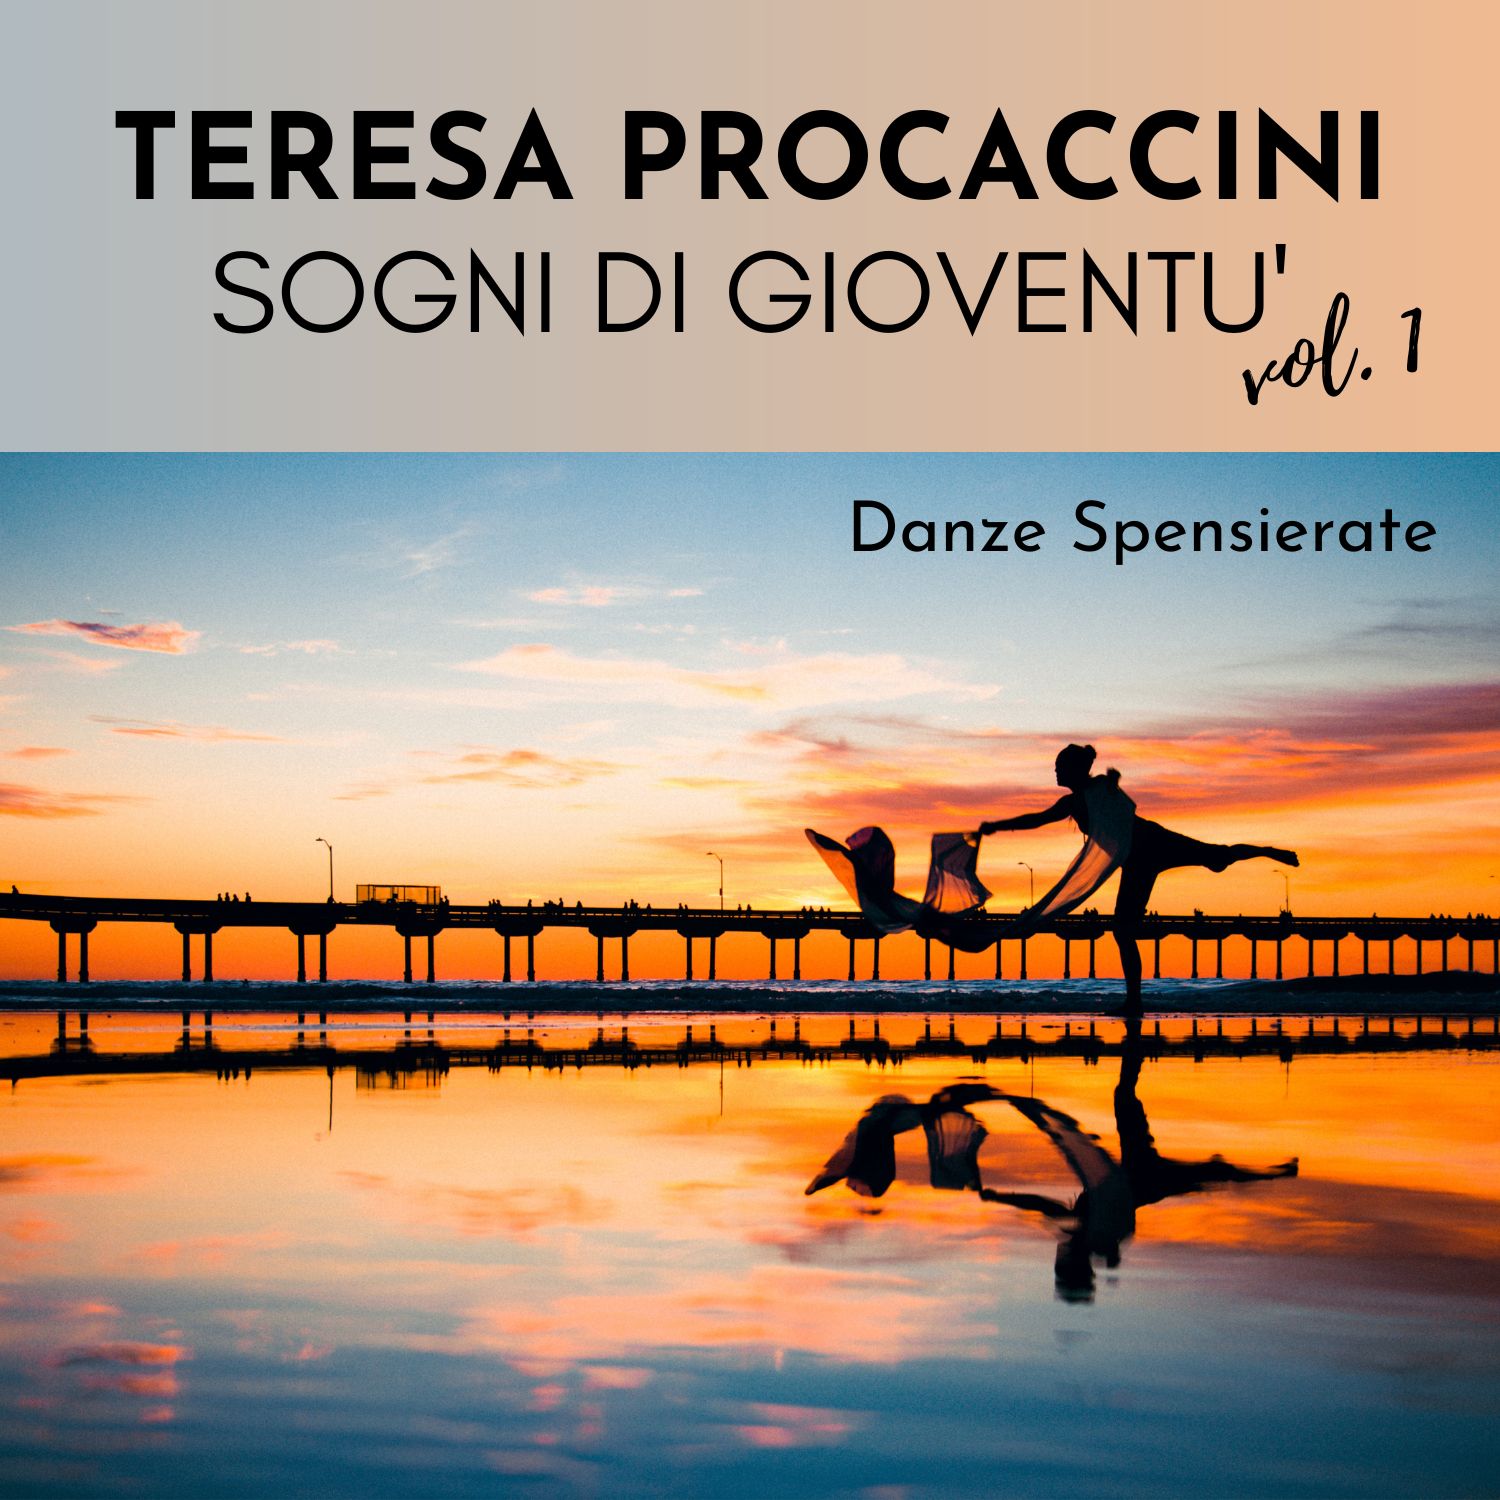 Teresa Procaccini: Sogni di gioventù Vol. 1 (Danze spensierate)